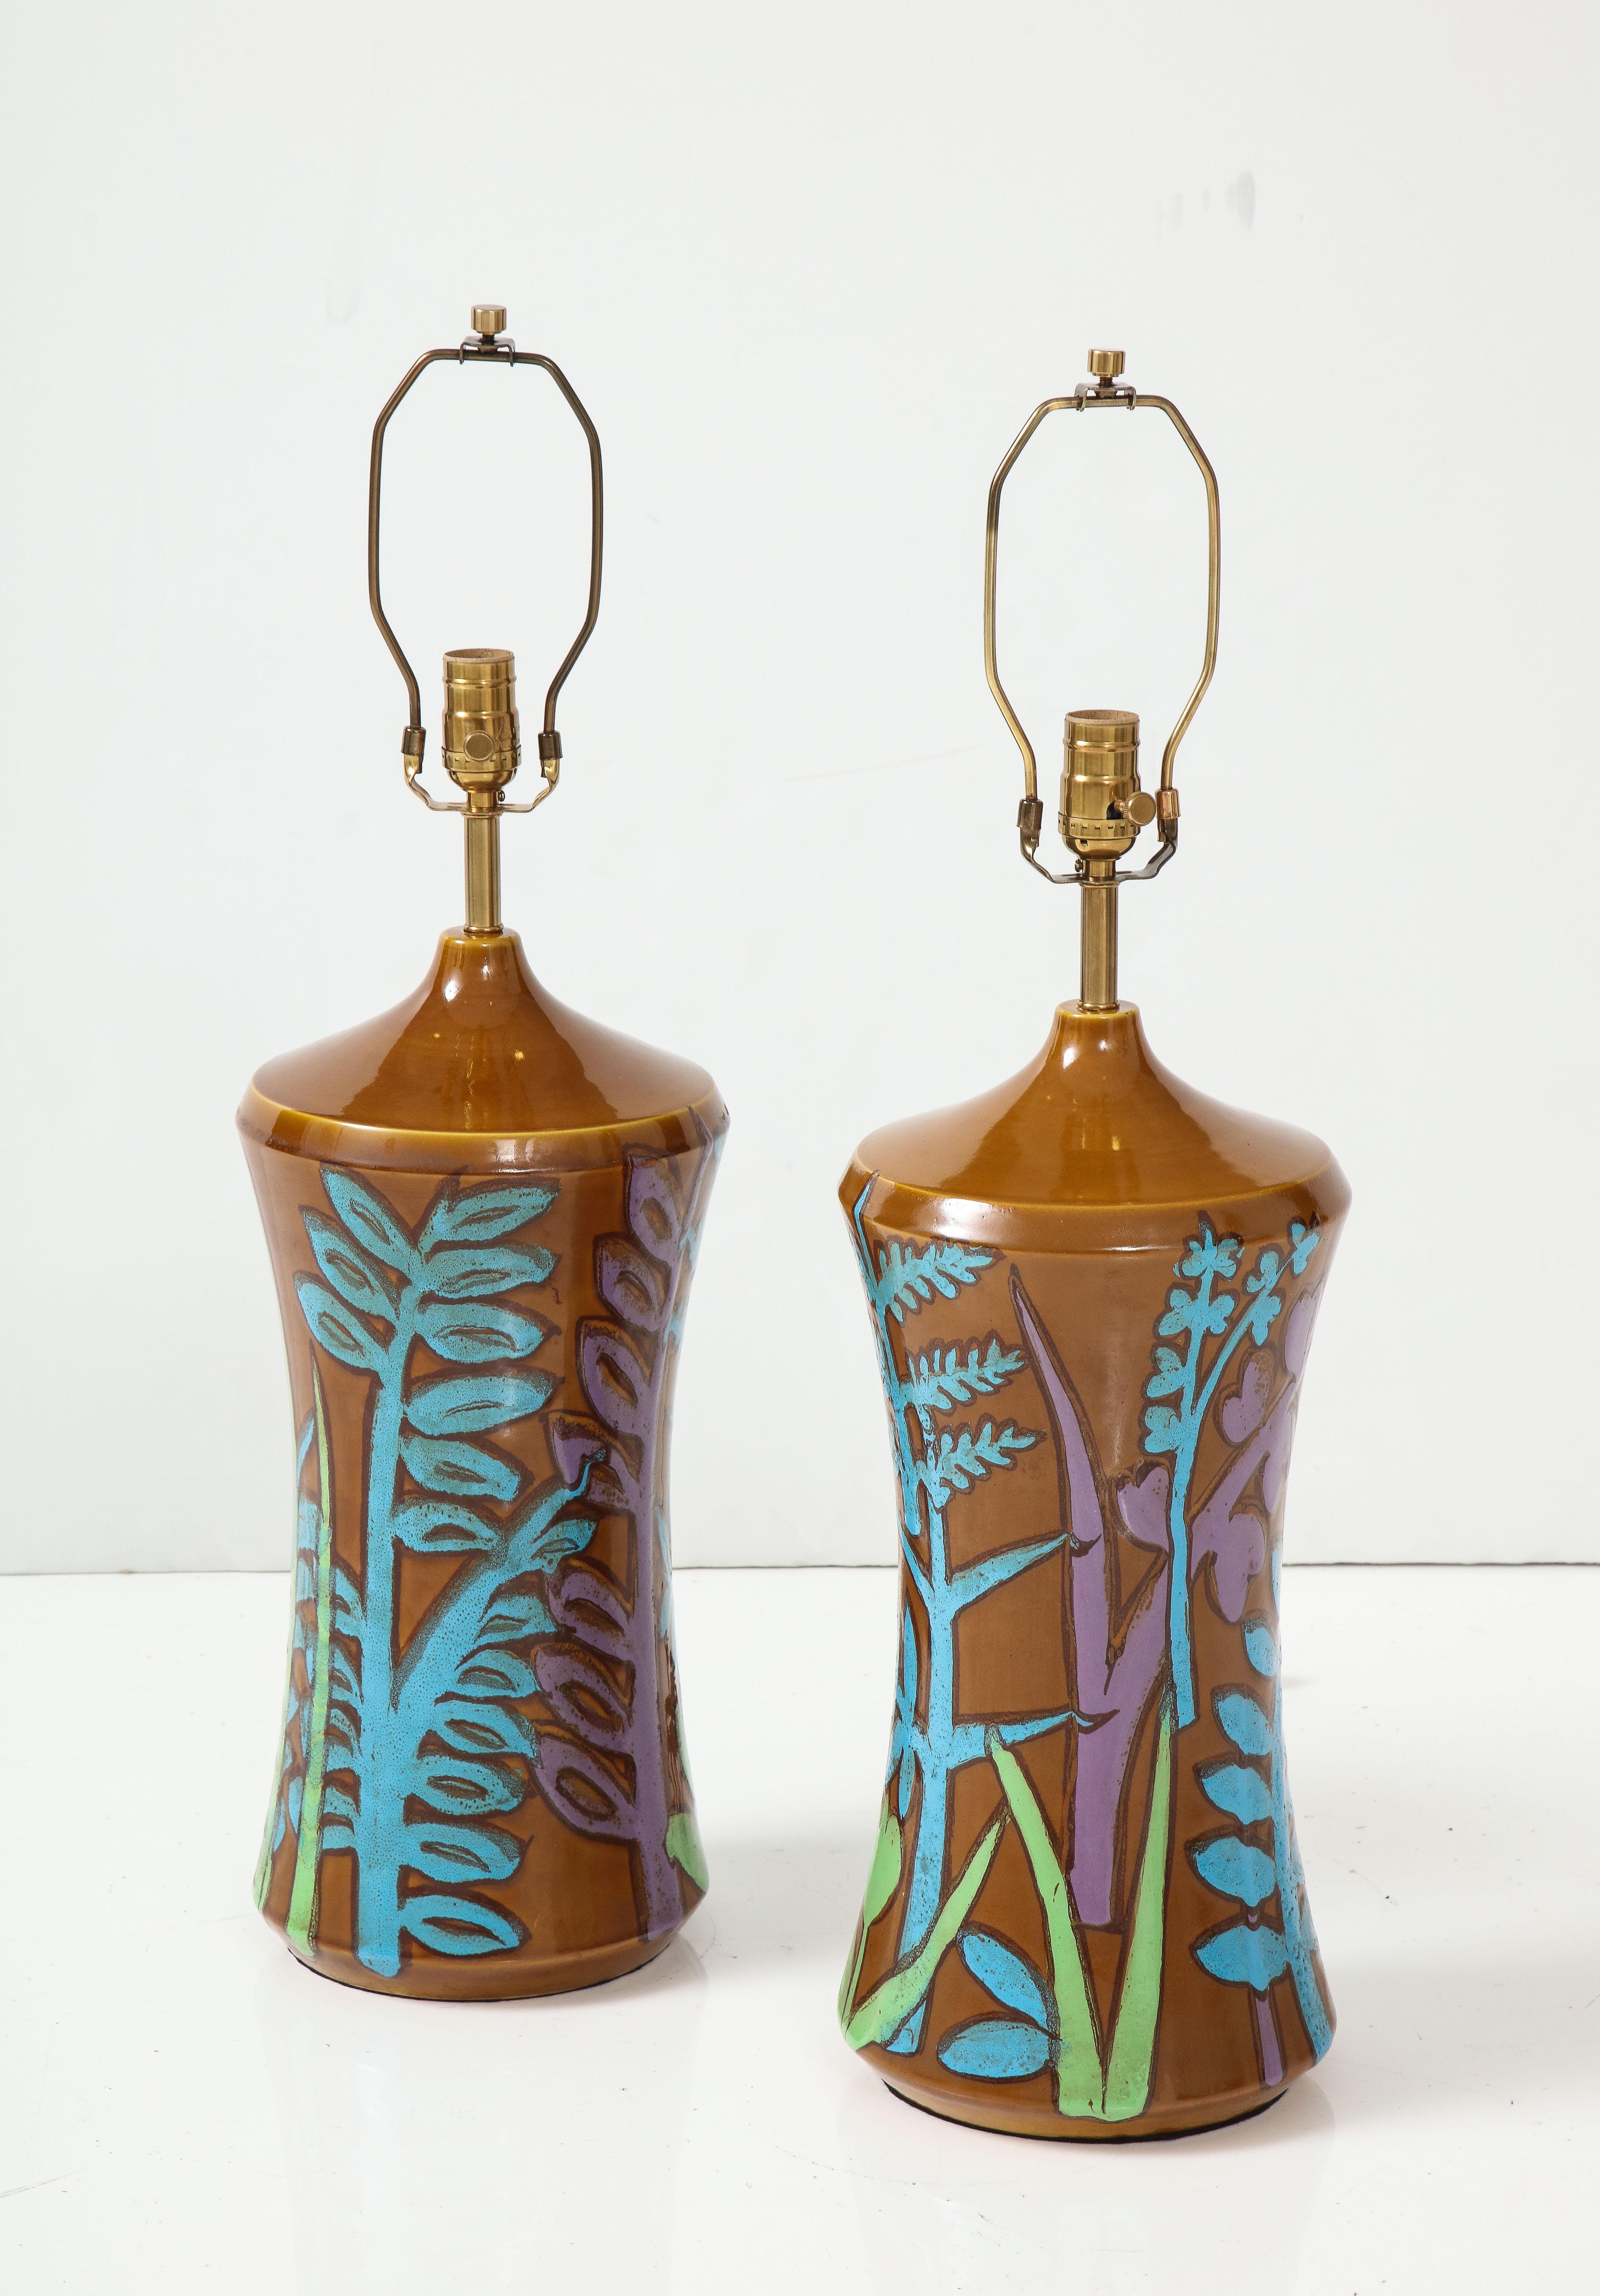 Paire de lampes italiennes en céramique décorée à la main, représentant un fond brun clair et une faune et des fleurs stylisées exubérantes en bleu clair, lilas et céladon. Recâblée pour une utilisation aux États-Unis avec de nouvelles prises en